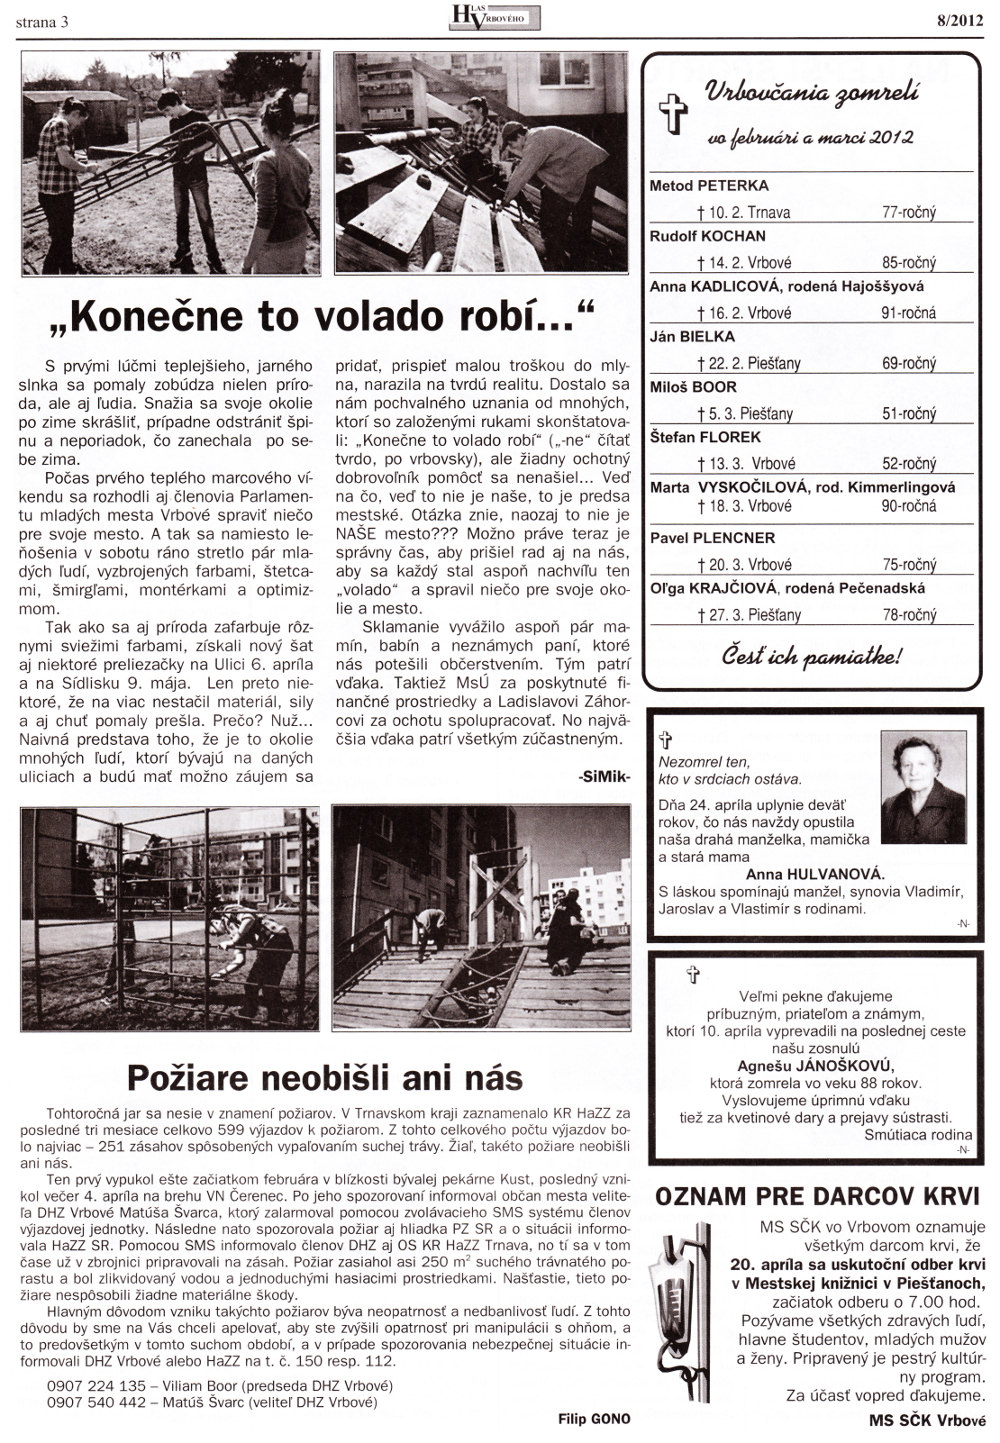 Hlas Vrbového 08/2012, strana 3